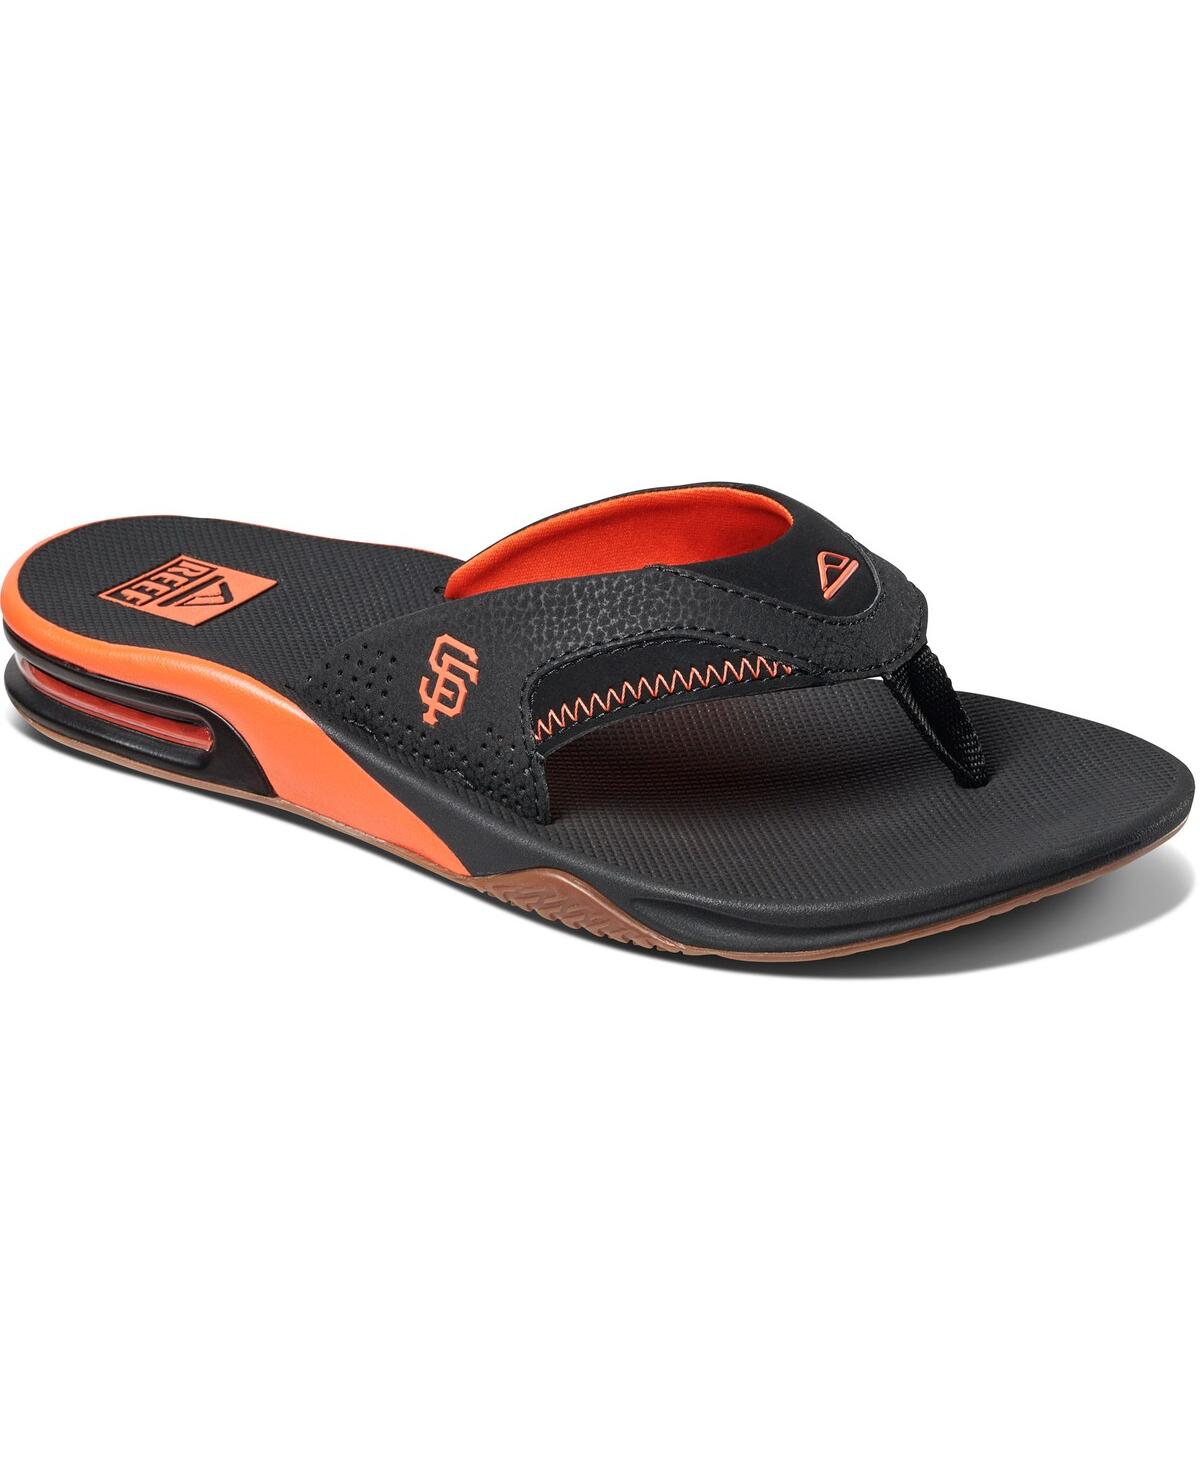 Reef Men's Fanning Flip Flops/Sandals, Water Resistant, Bottle Opener